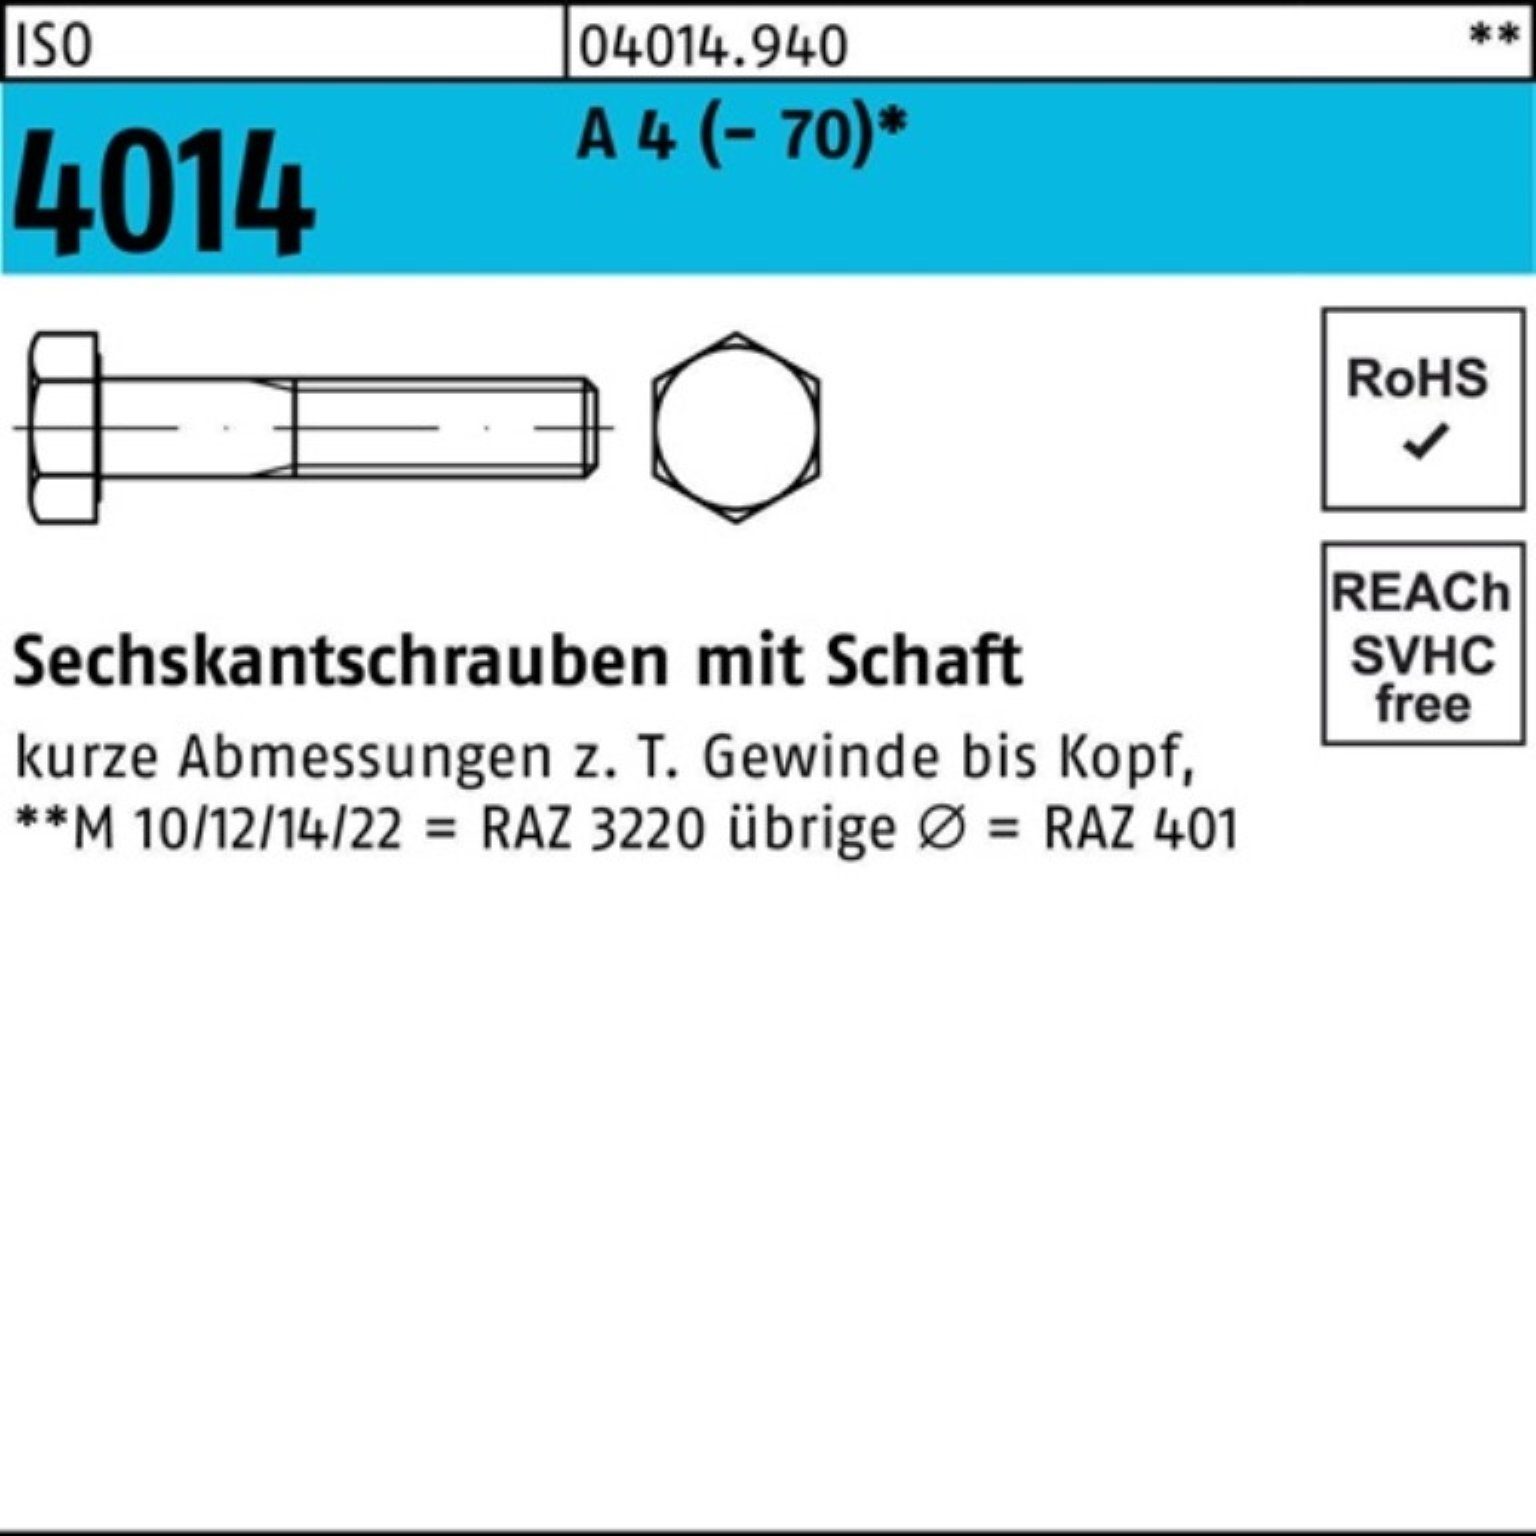 Pack 4014 (70) Bufab 10 100er 200 M22x Schaft St A 4 Sechskantschraube ISO Sechskantschraube